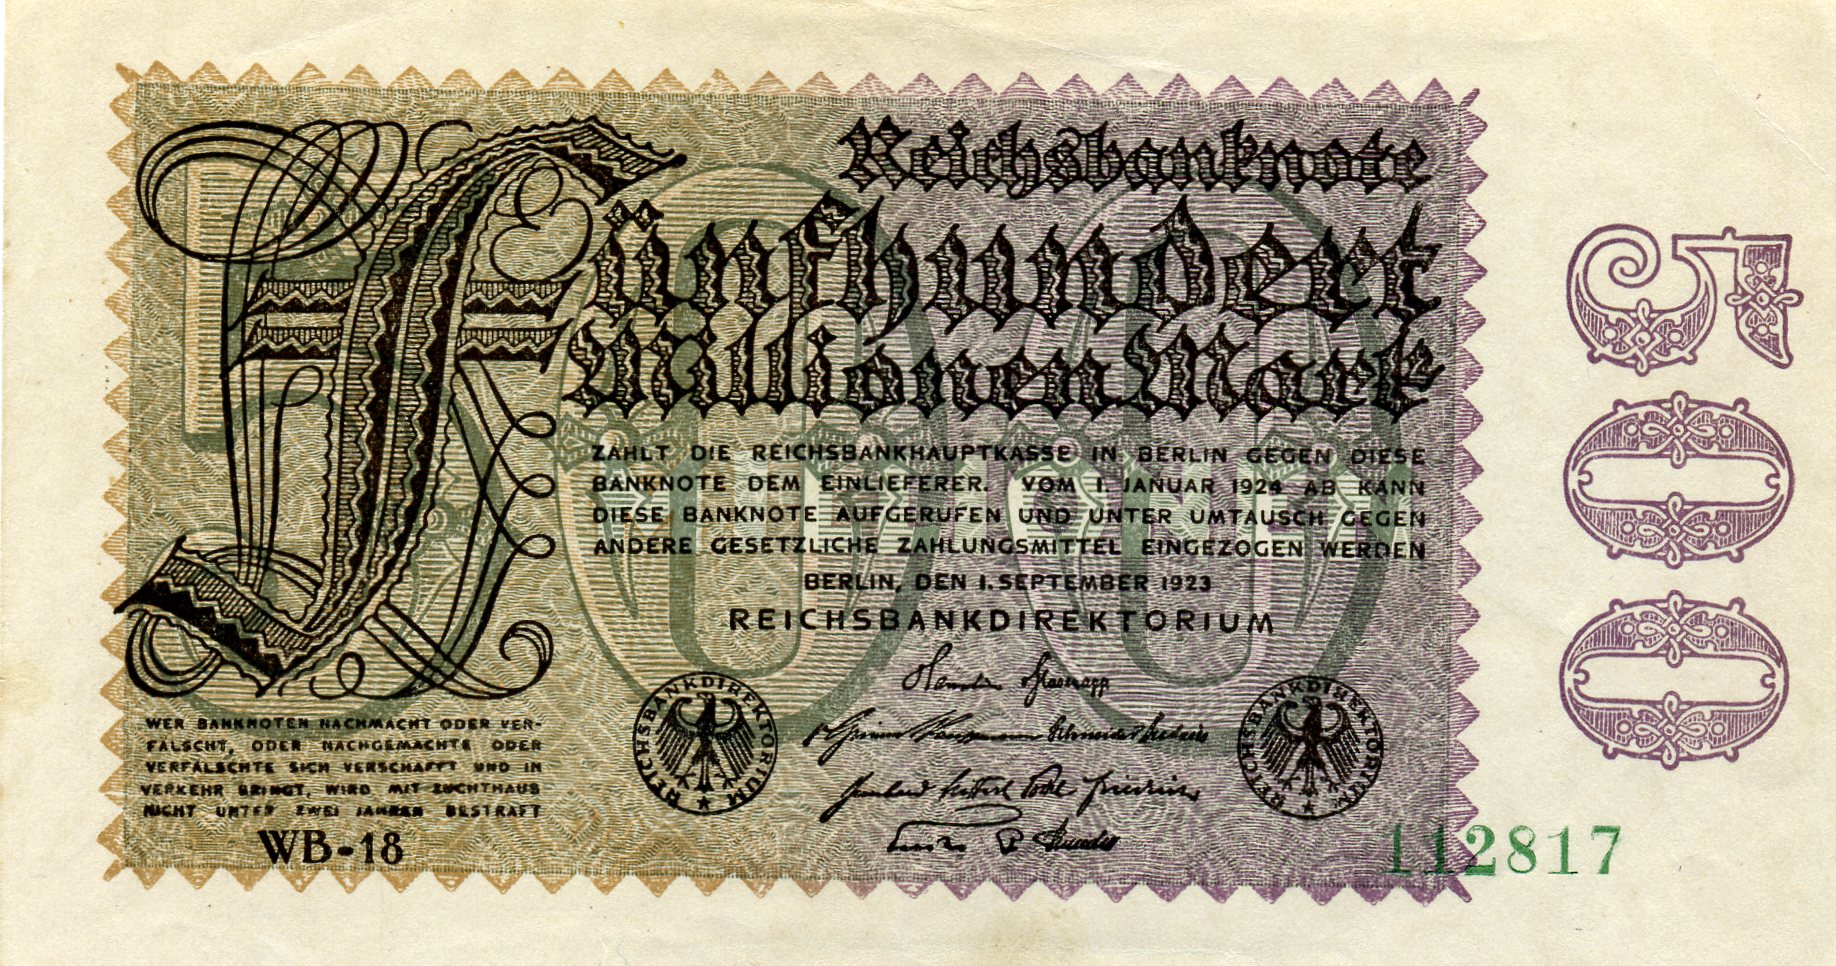 500 миллионов марок 1 сентября 1923 года. Реферат Рефератович.